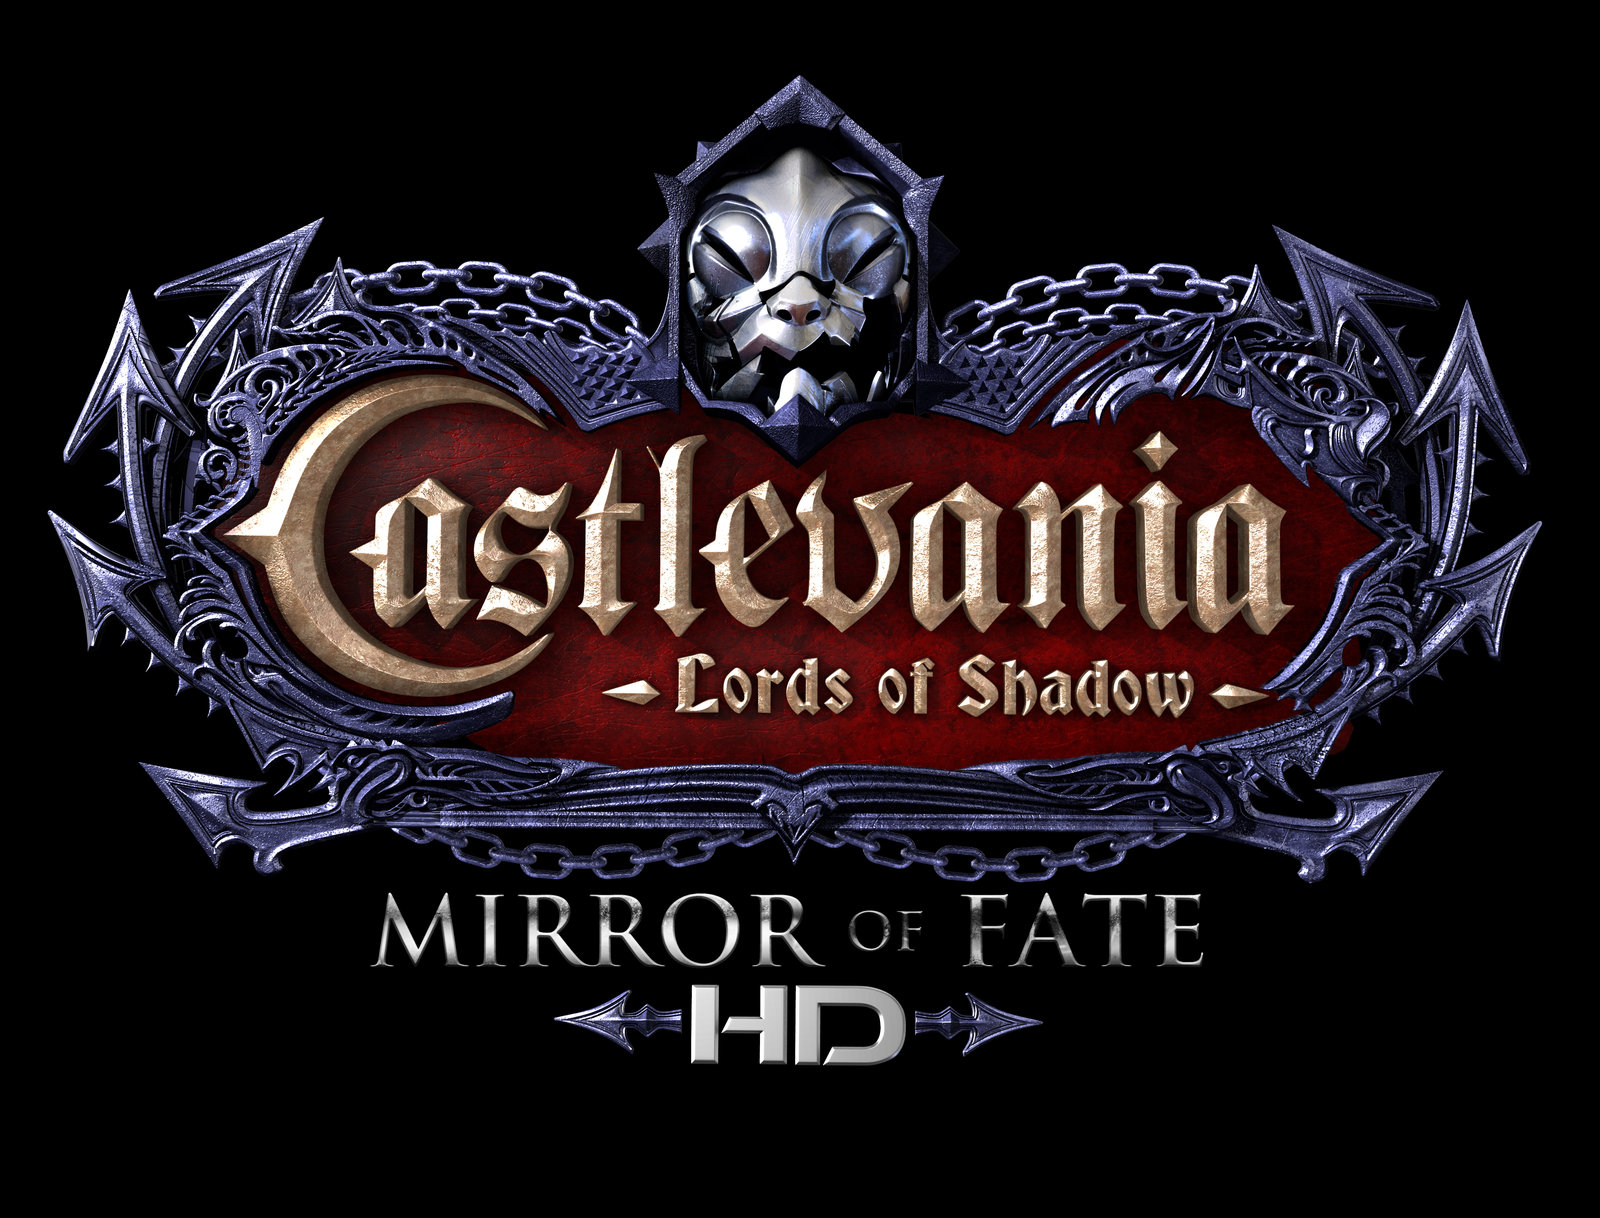 Mirror shadows. Castlevania Lords of Shadow Mirror of Fate 3ds. Castlevania Mirror of Fate 3ds. Castlevania: Lords of Shadow - Mirror of Fate Дракула. Castlevania Lords of Shadow 2 логотип.